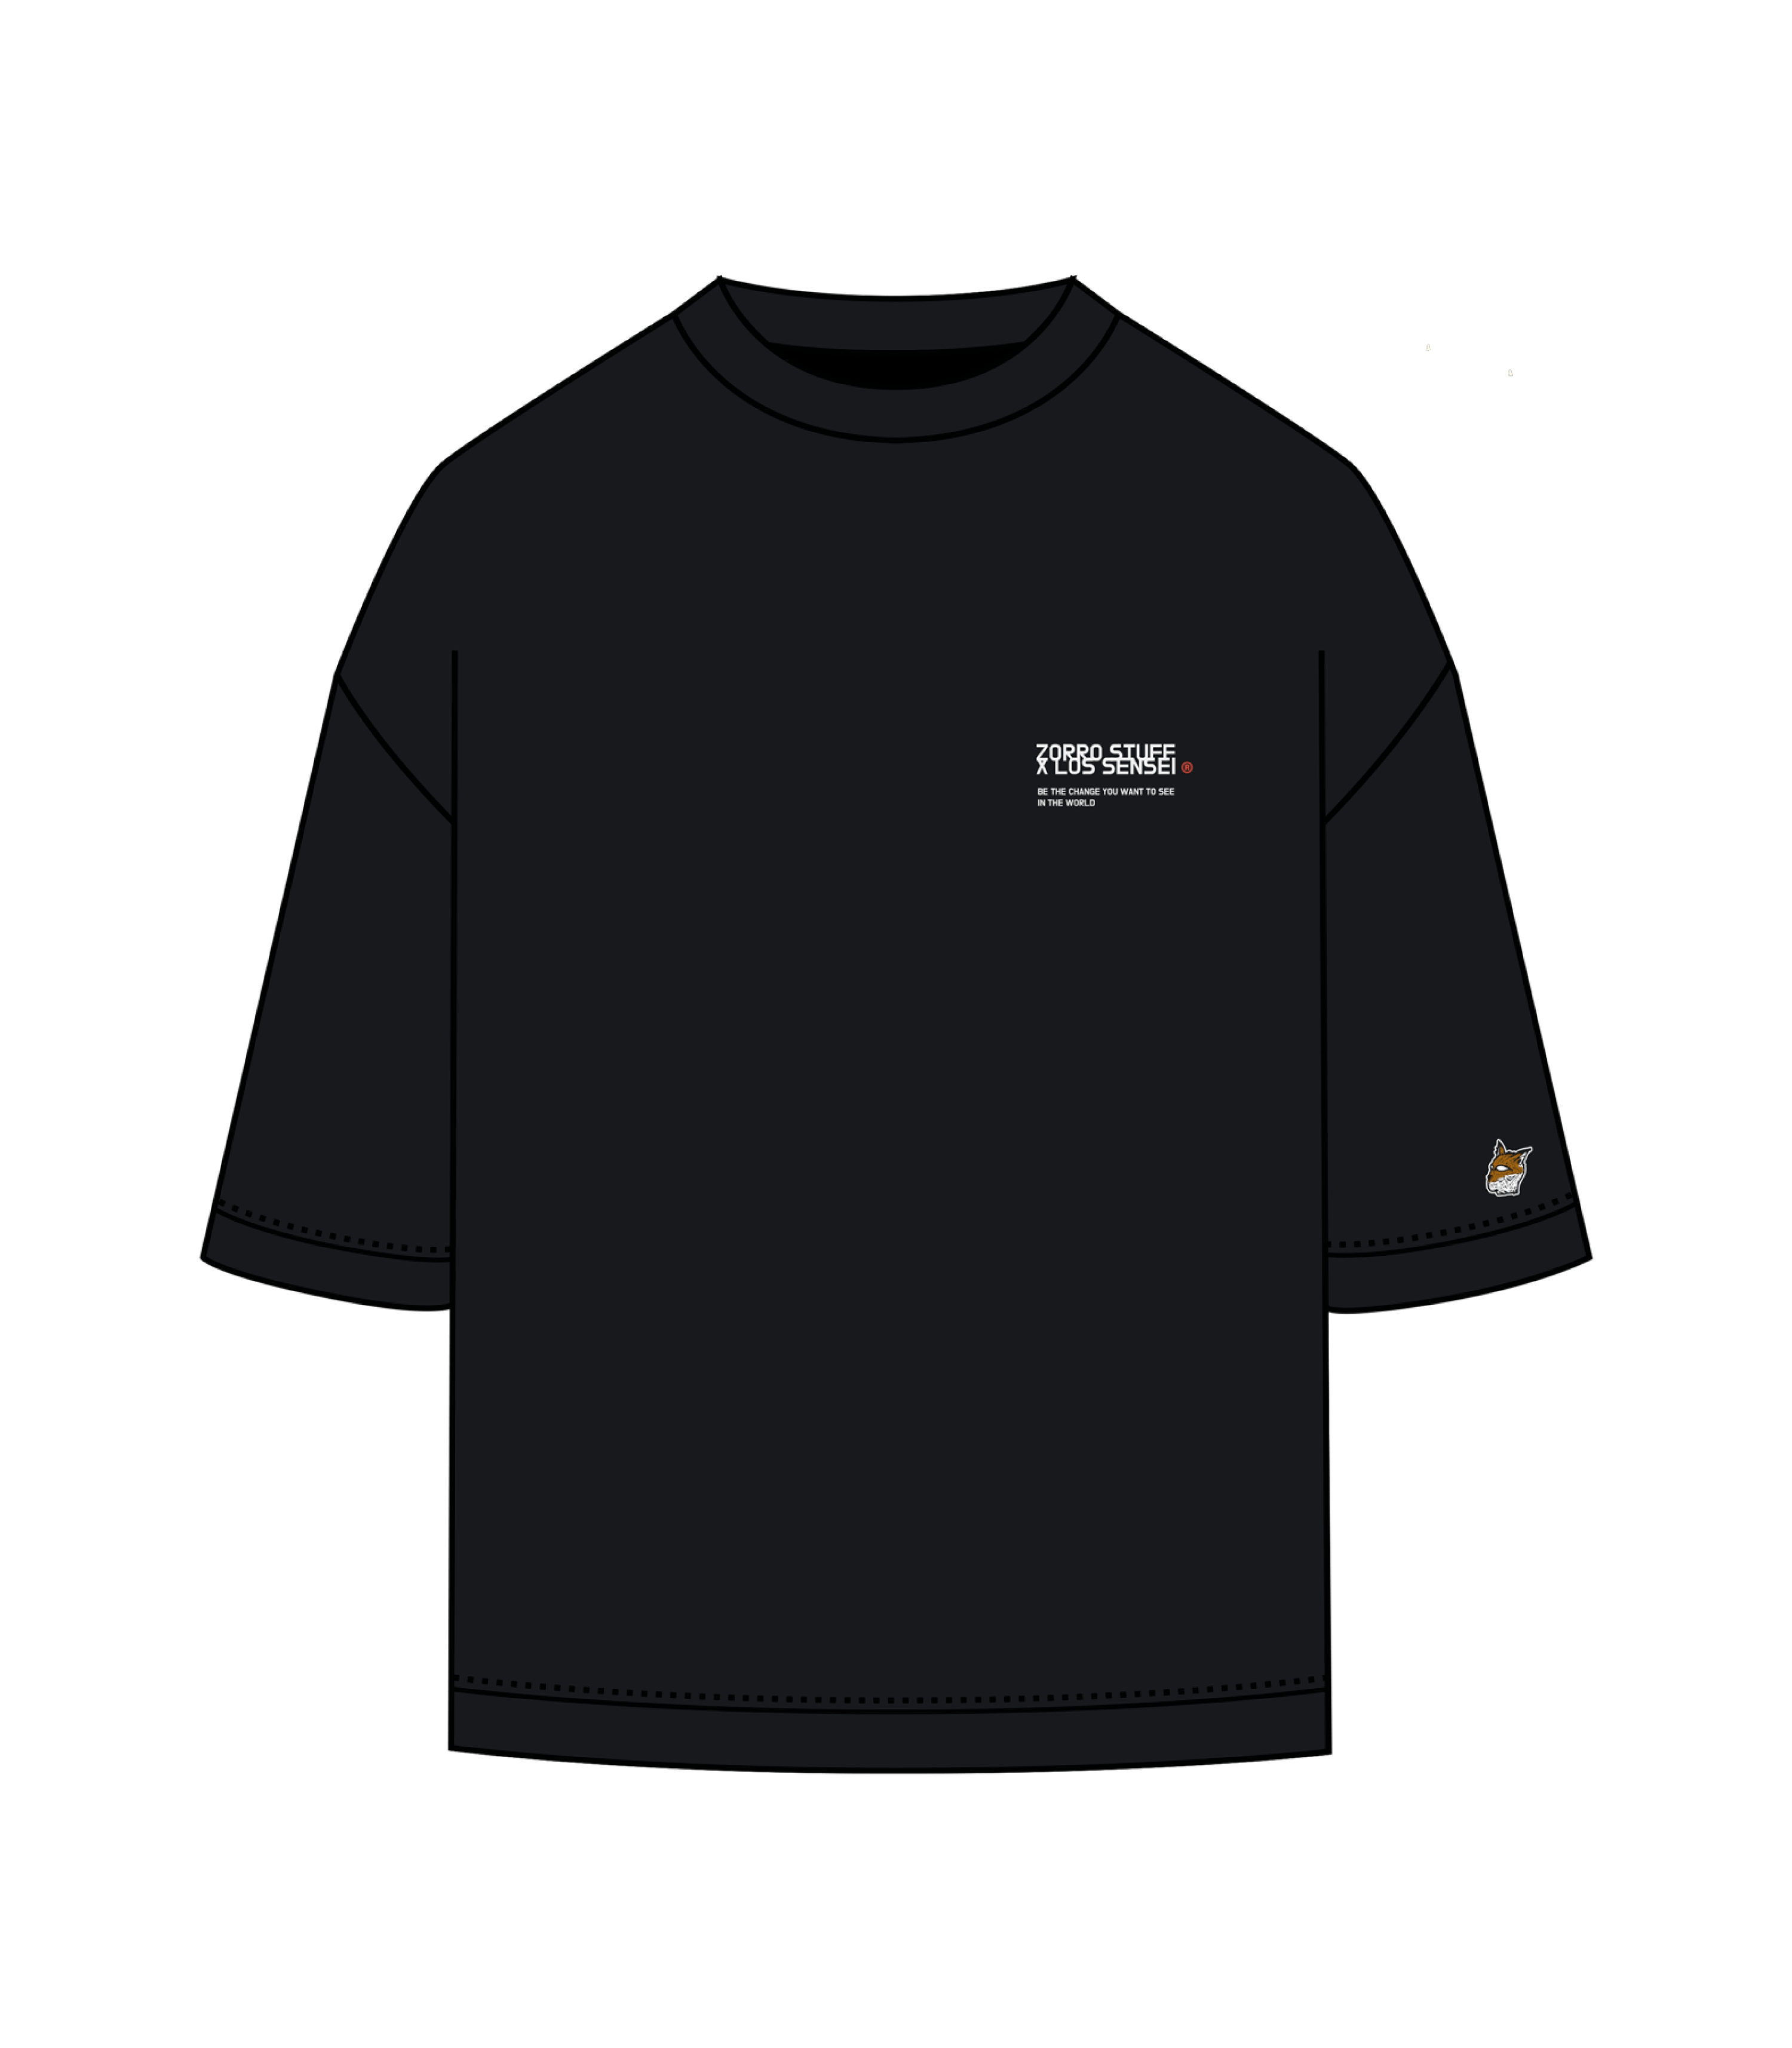 Zorro Stuff T-Shirts ZS x Los Sensei Black Tee